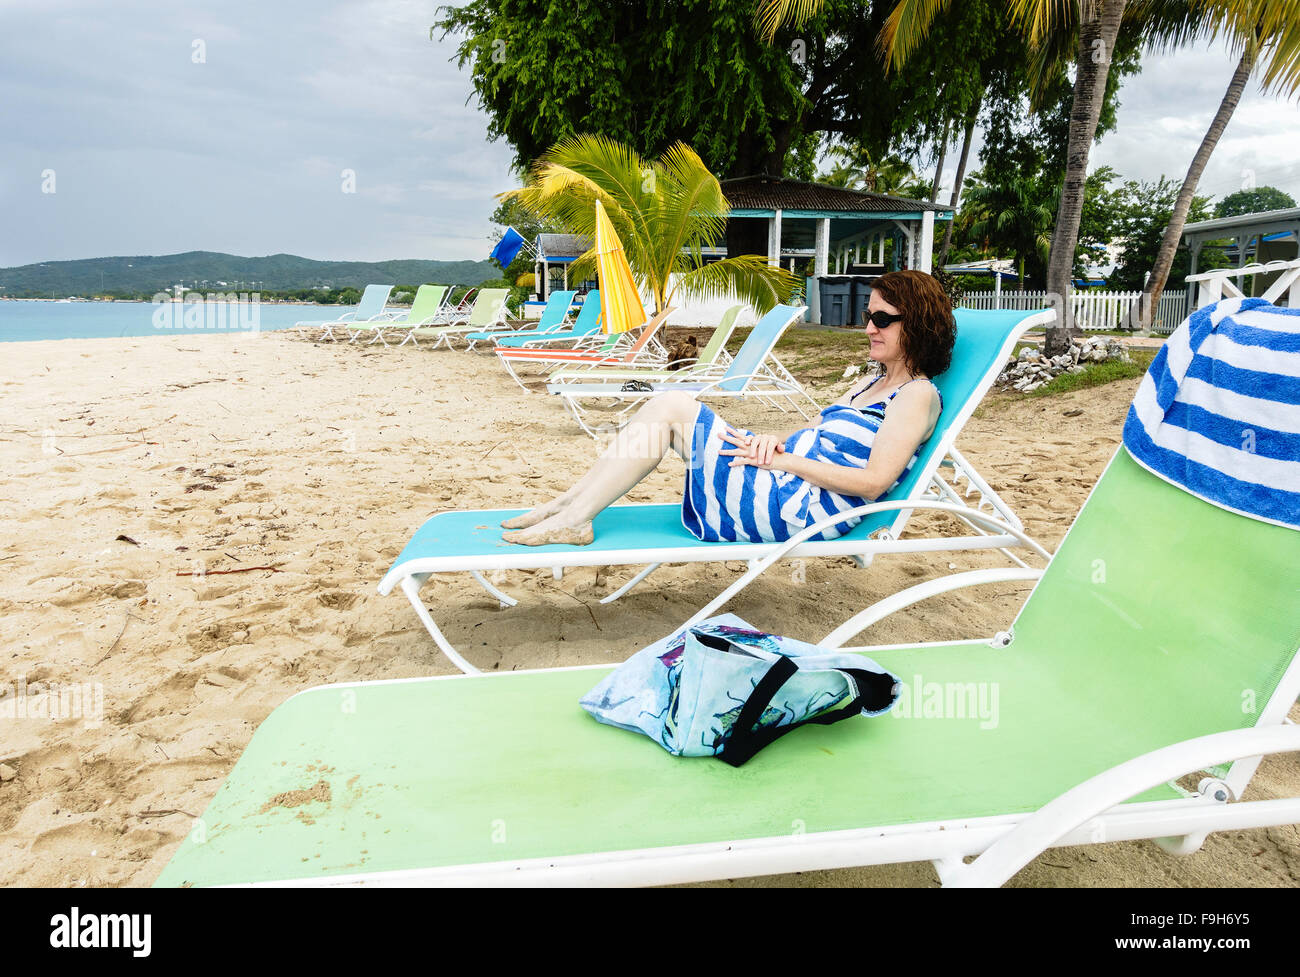 A 50 ans, invité à un beachside resort, se termine dans une serviette de plage et donne sur la mer. Sainte Croix, Îles Vierges des États-Unis. Banque D'Images